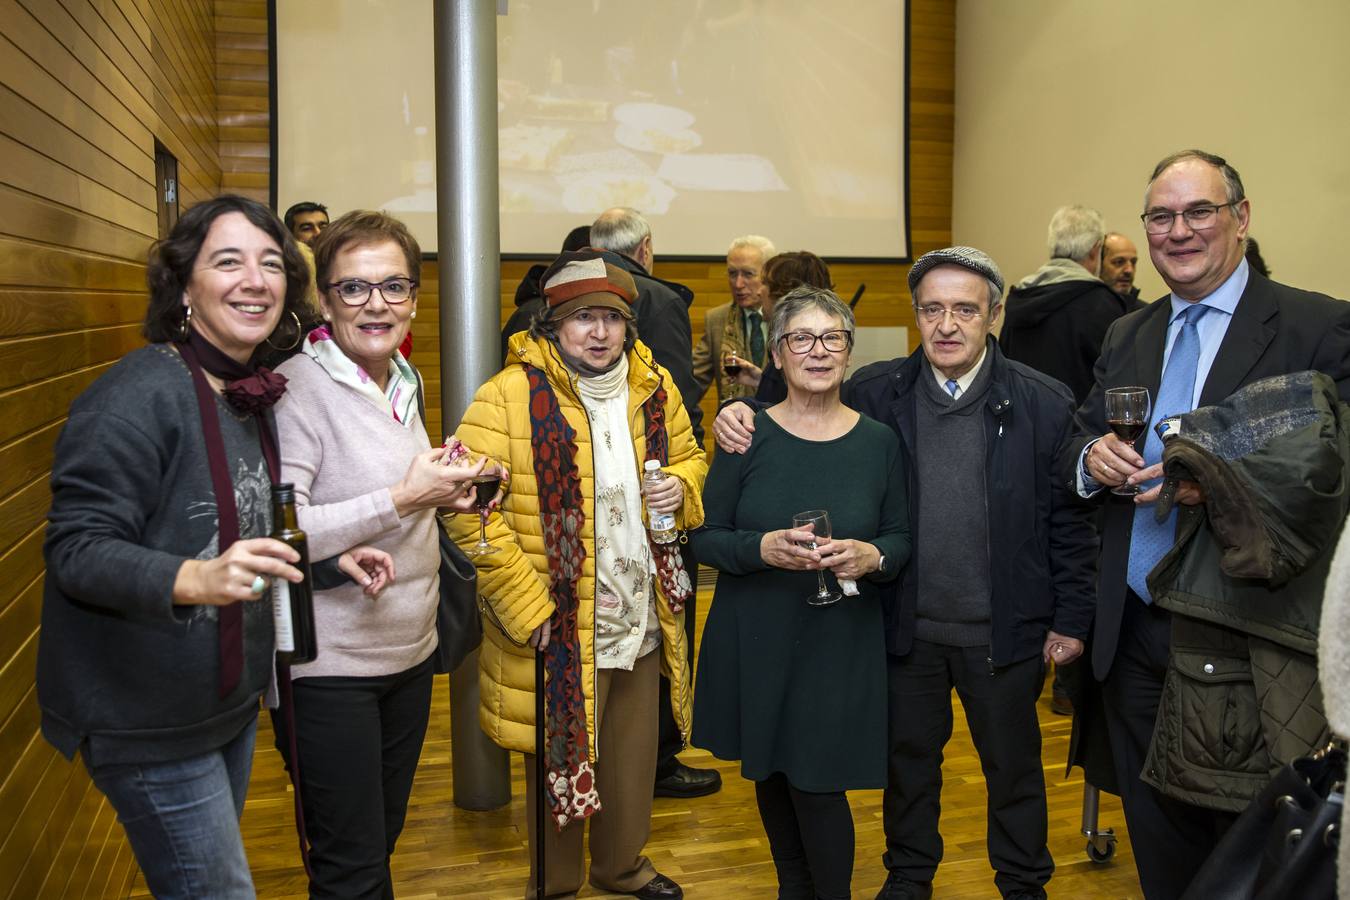 En este acto en la Asociación de la Prensa se ha homenajeado a la periodista Teresa Alonso, recientemente prejubilada de Radio Rioja, así como se ha recodado a Emilio Ramírez, de Diario La Rioja, quien falleció el pasado 22 de diciembre. Además se ha dado la bienvenida a doce nuevos asociados